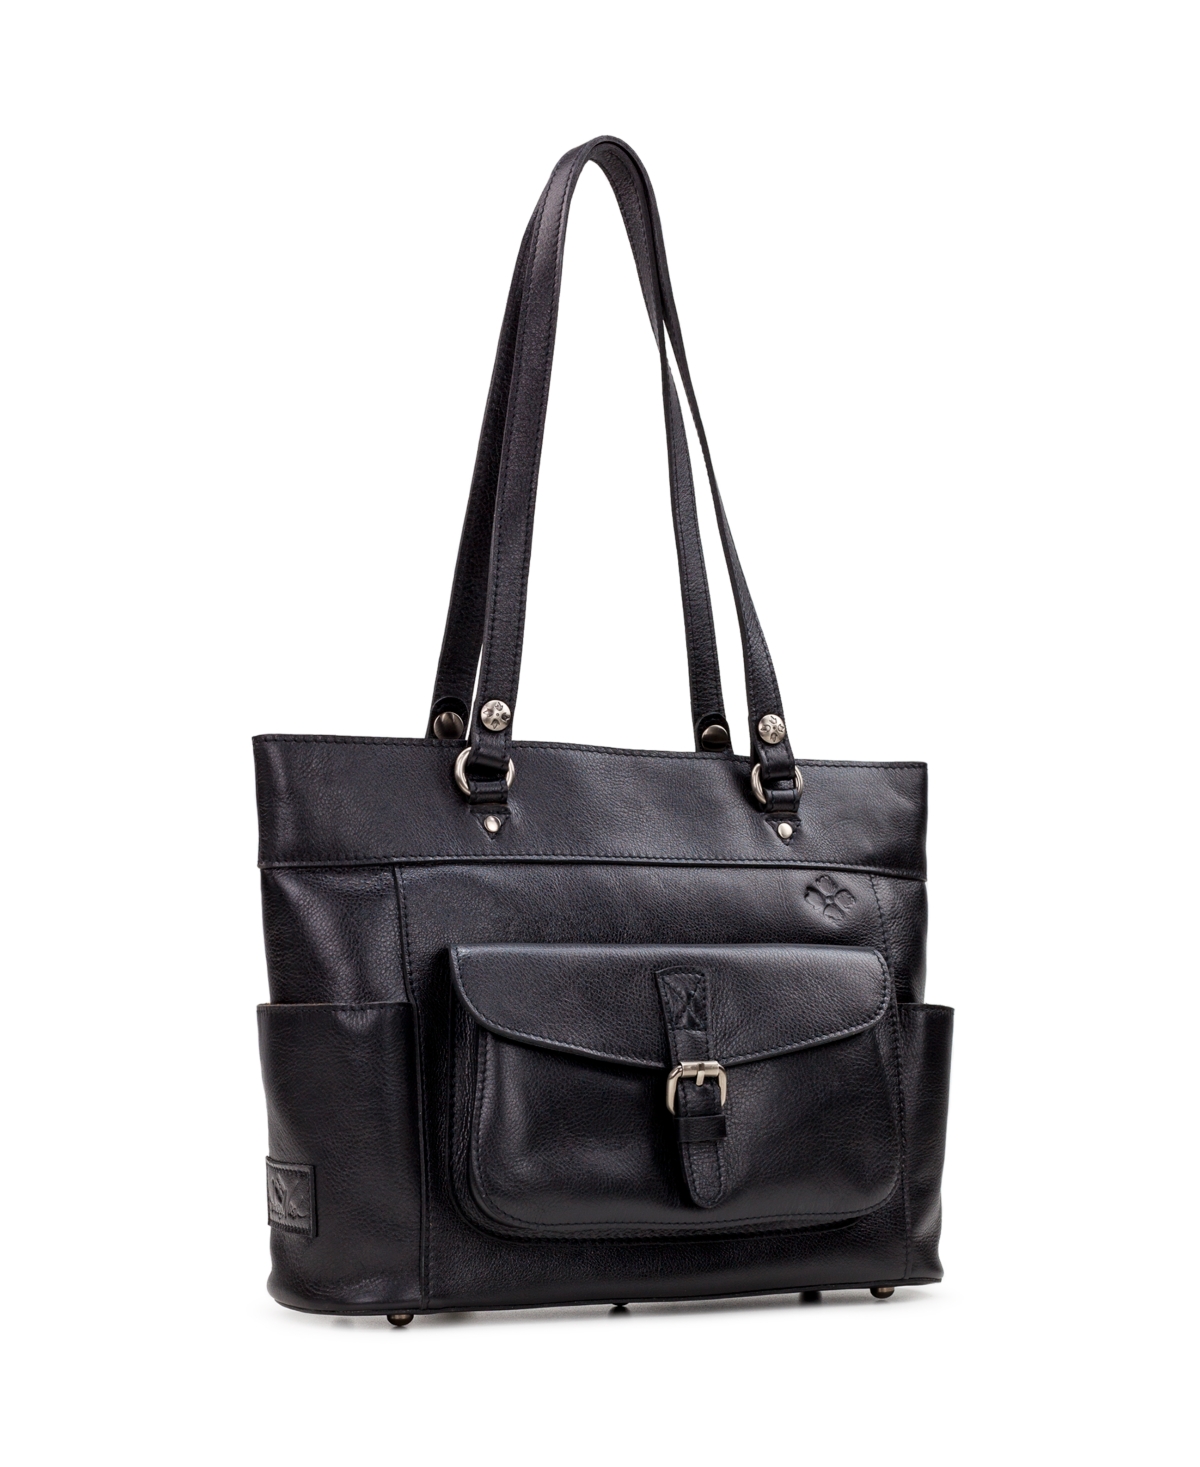 Women's Bolsena Large Tote Bag - Black